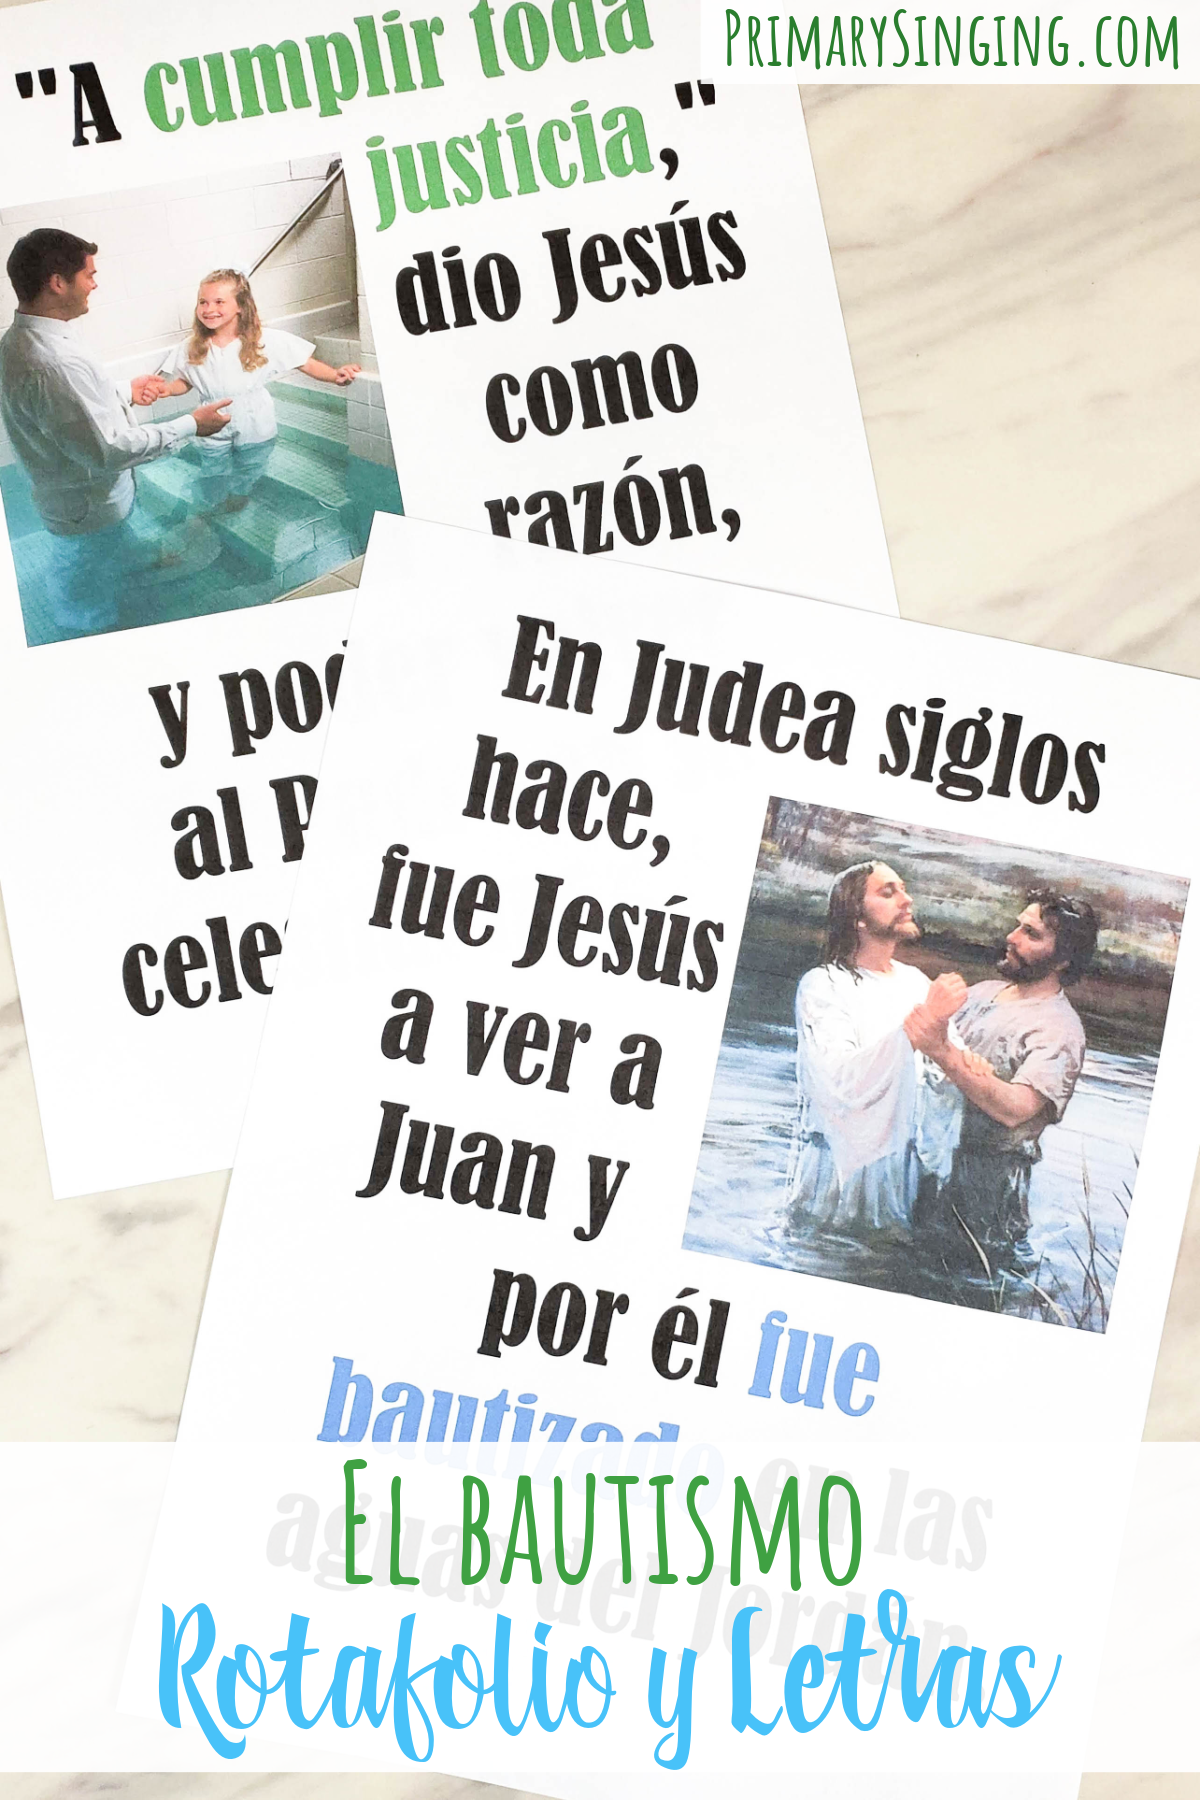 Encontrarás la letra de la canción de El bautismo en 4 versiones diferentes, que te ayudarán muchísimo en el Tiempo de cantar #SUD #Primaria #Tiempodecantar #Liderdemusica